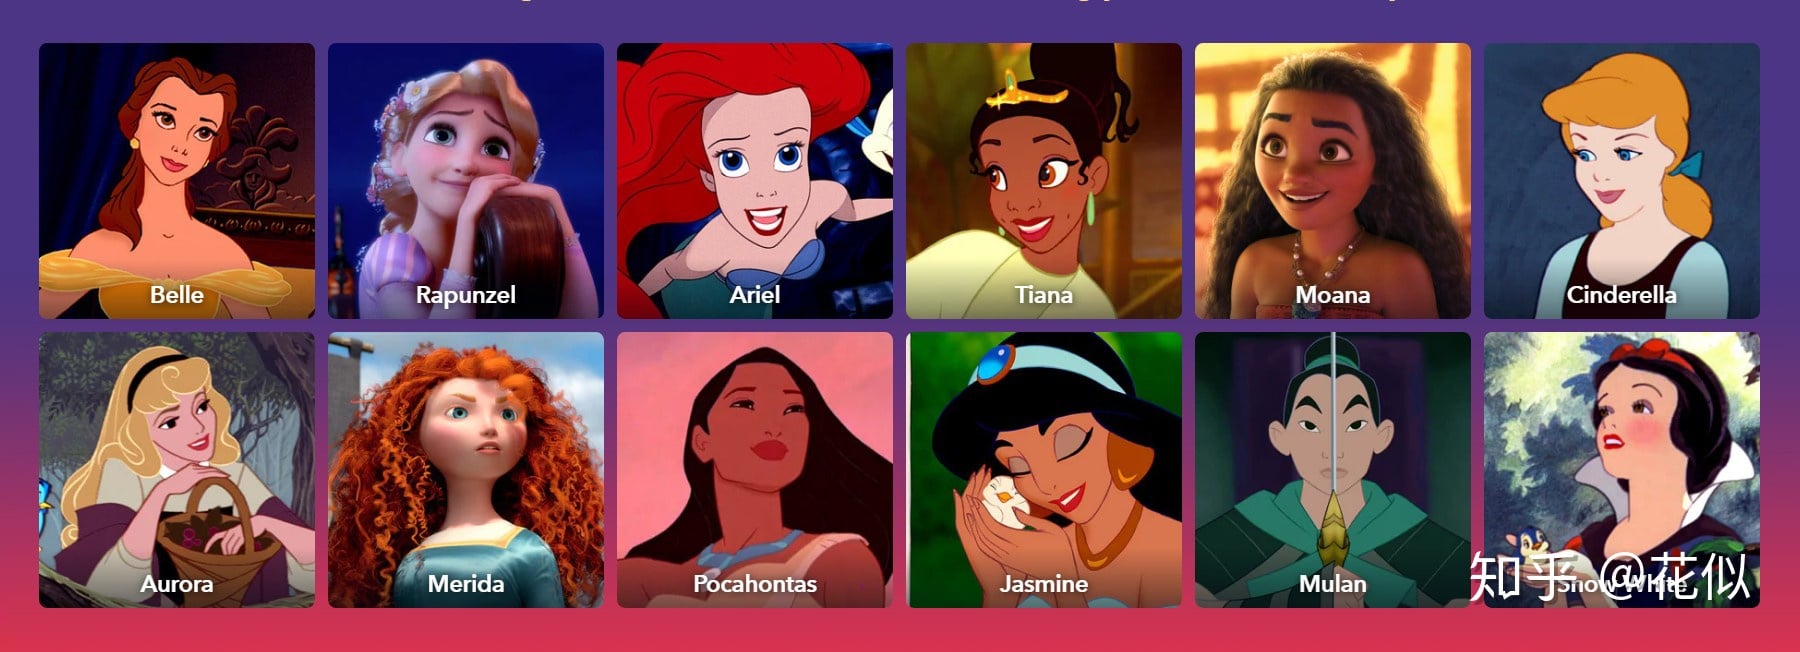 Công chúa tóc xù | Disney | Tóm tắt phim | Brave | Review phim | Phèn  Studio | Phim hoạt hình - YouTube